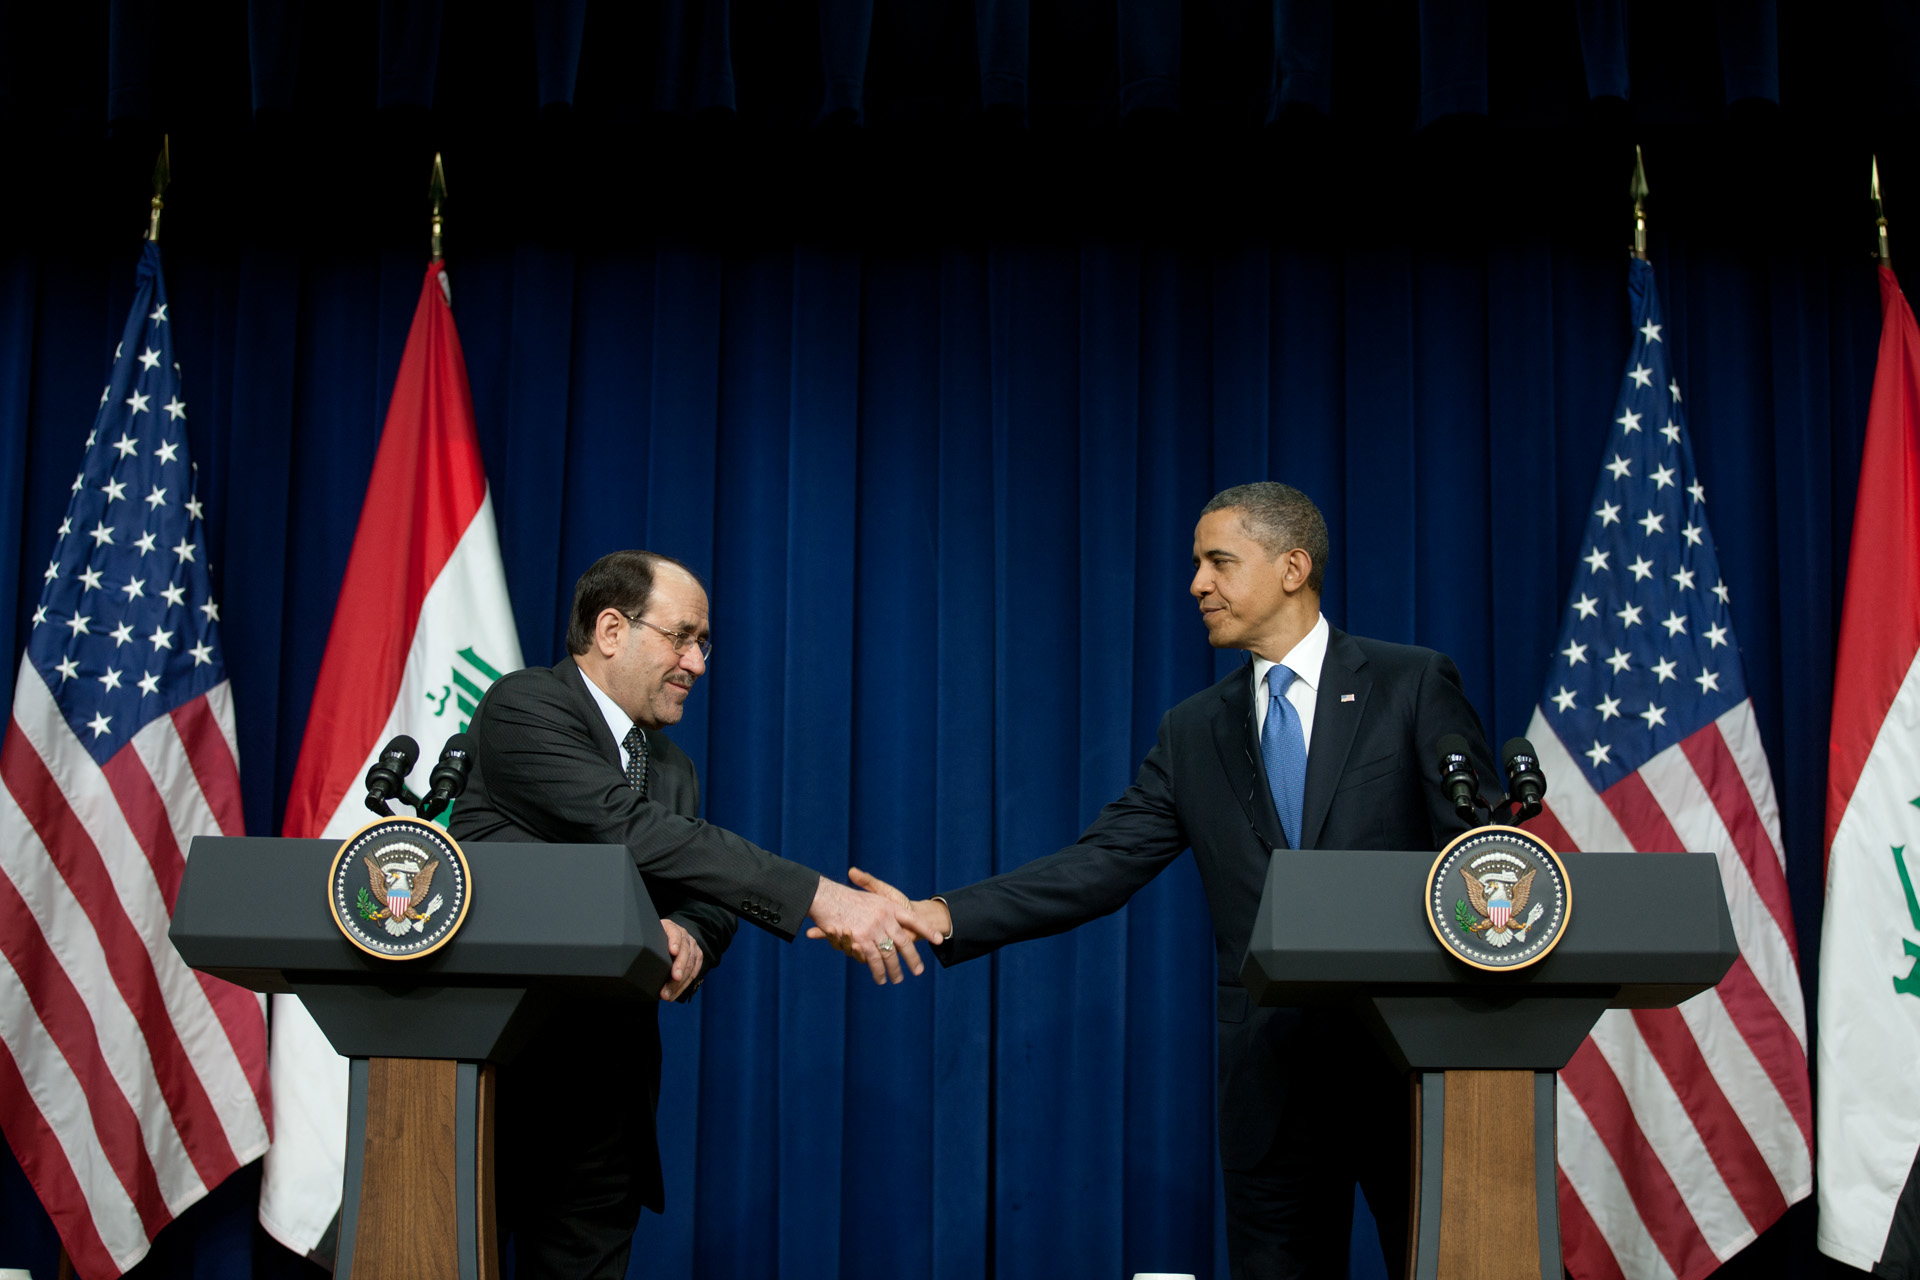 20111212 POTUS Maliki Handshake 